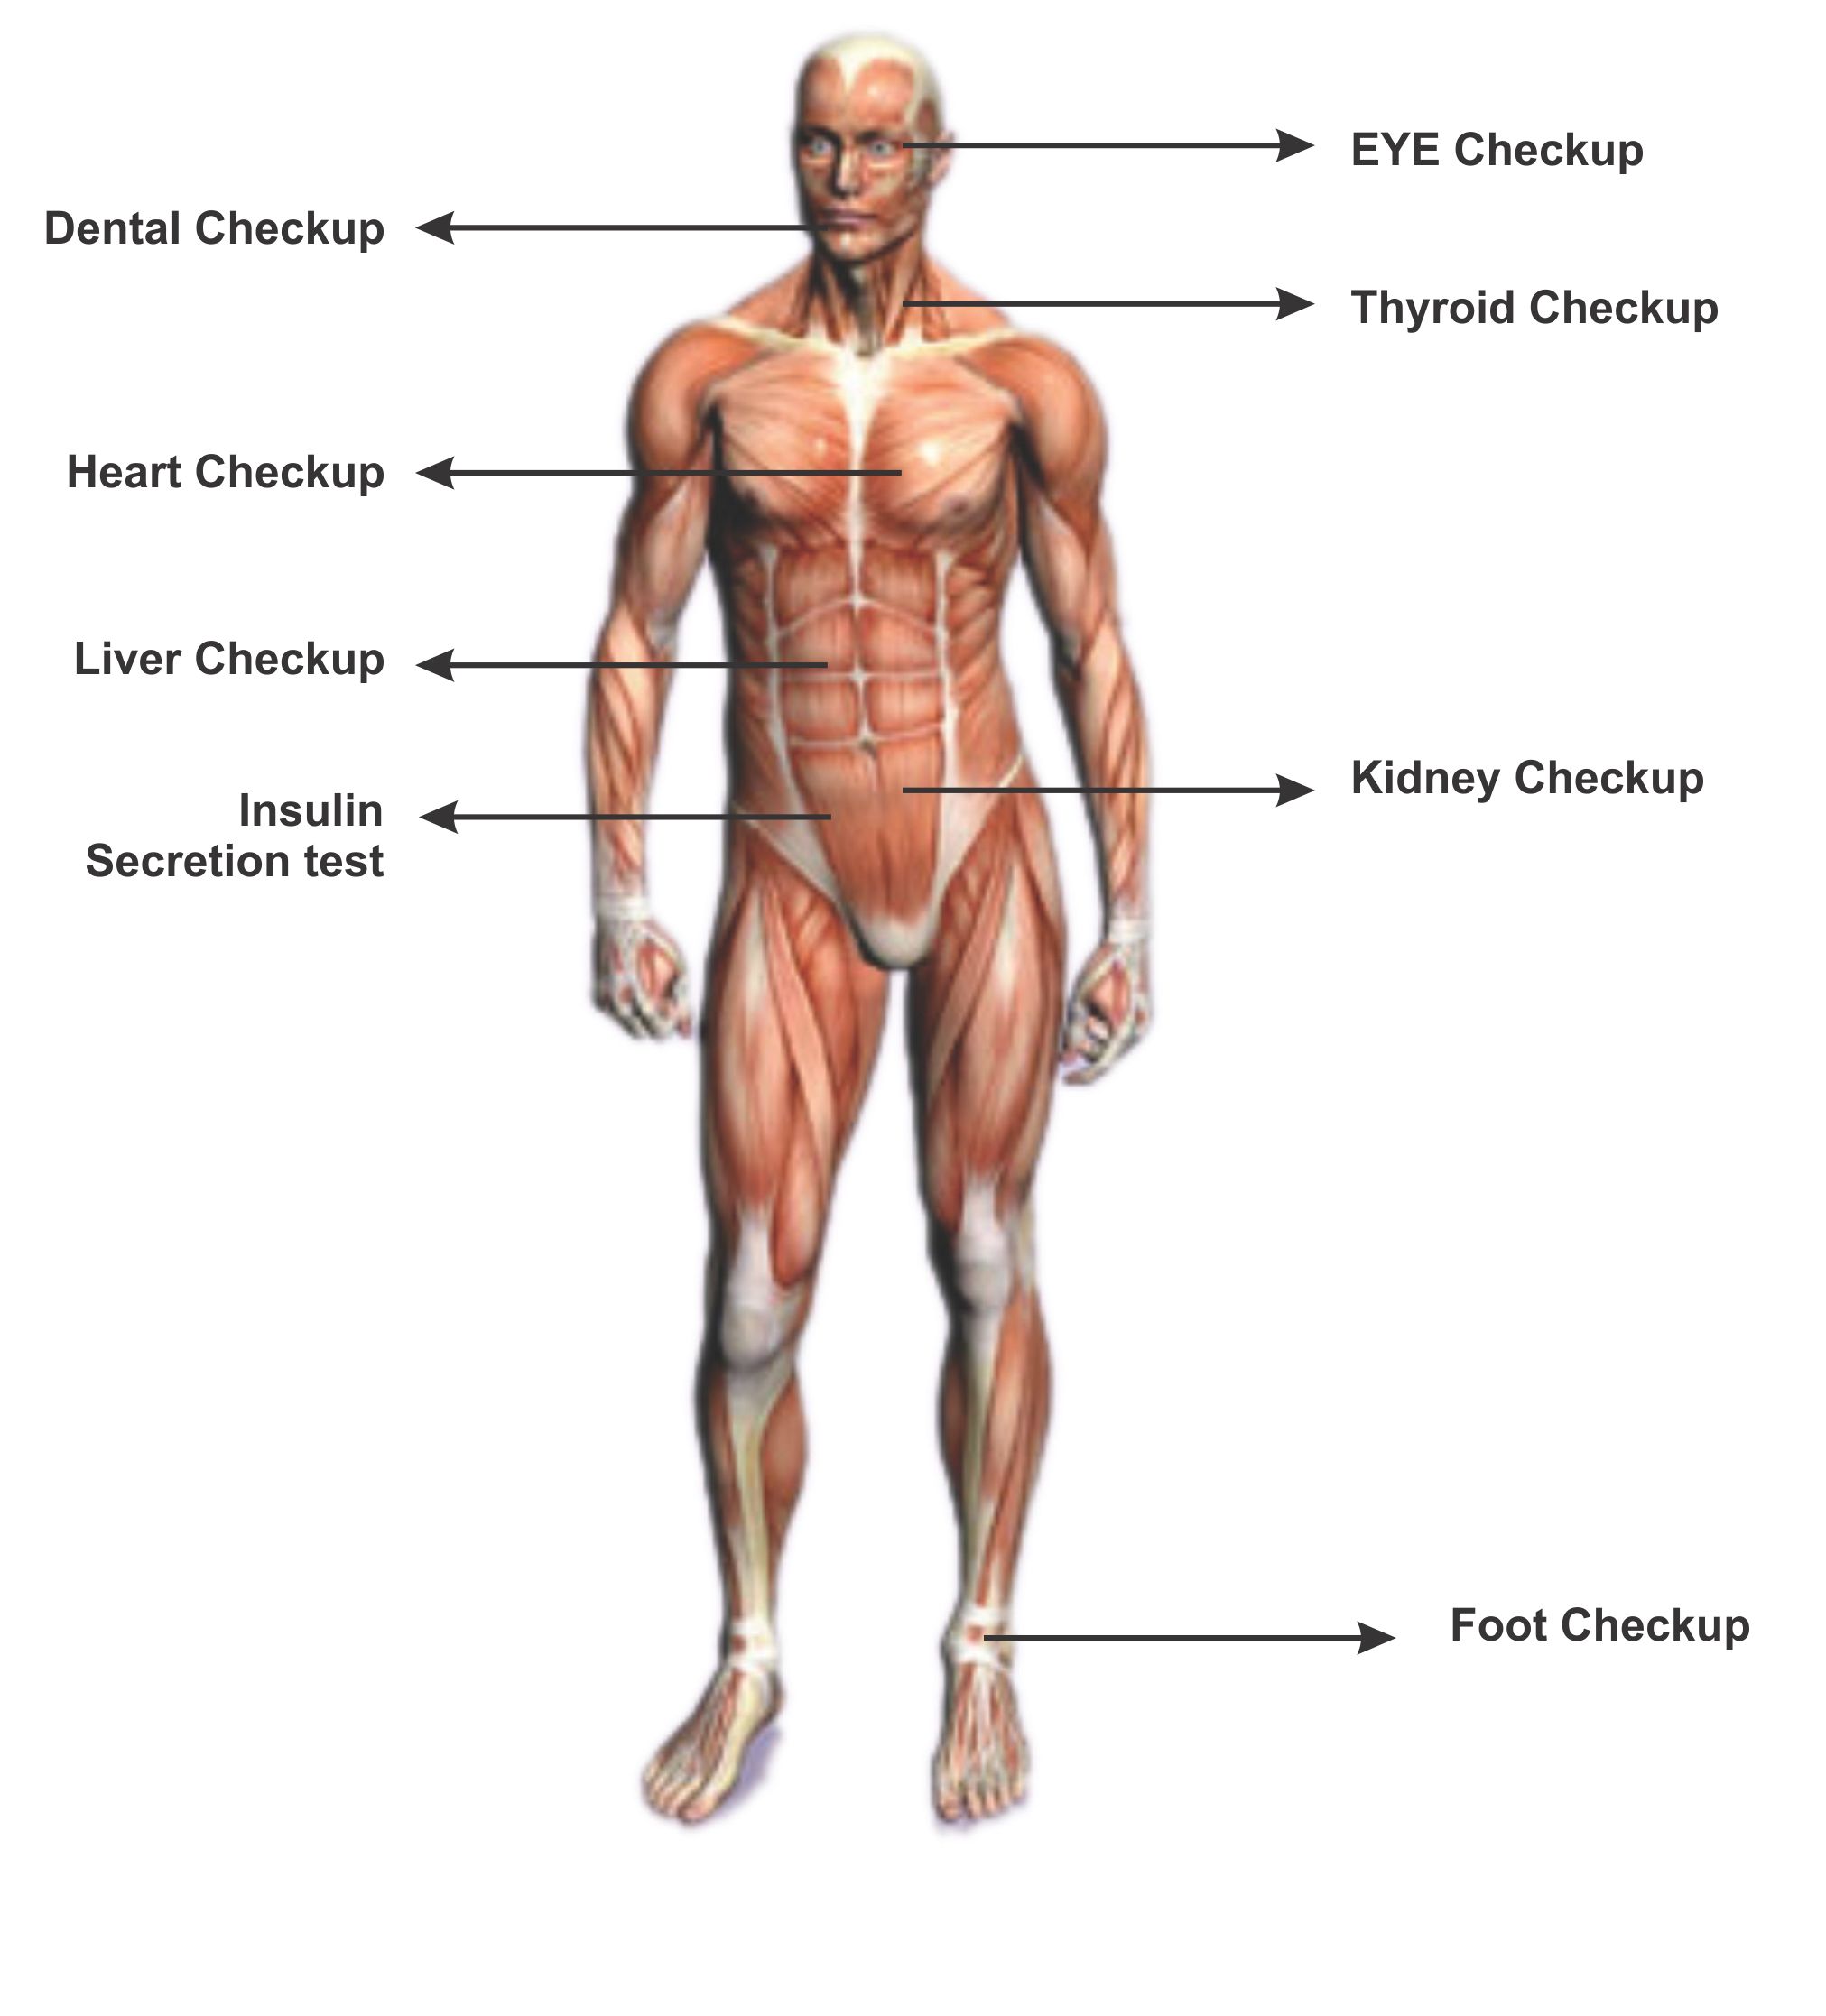 Основные мышцы человека